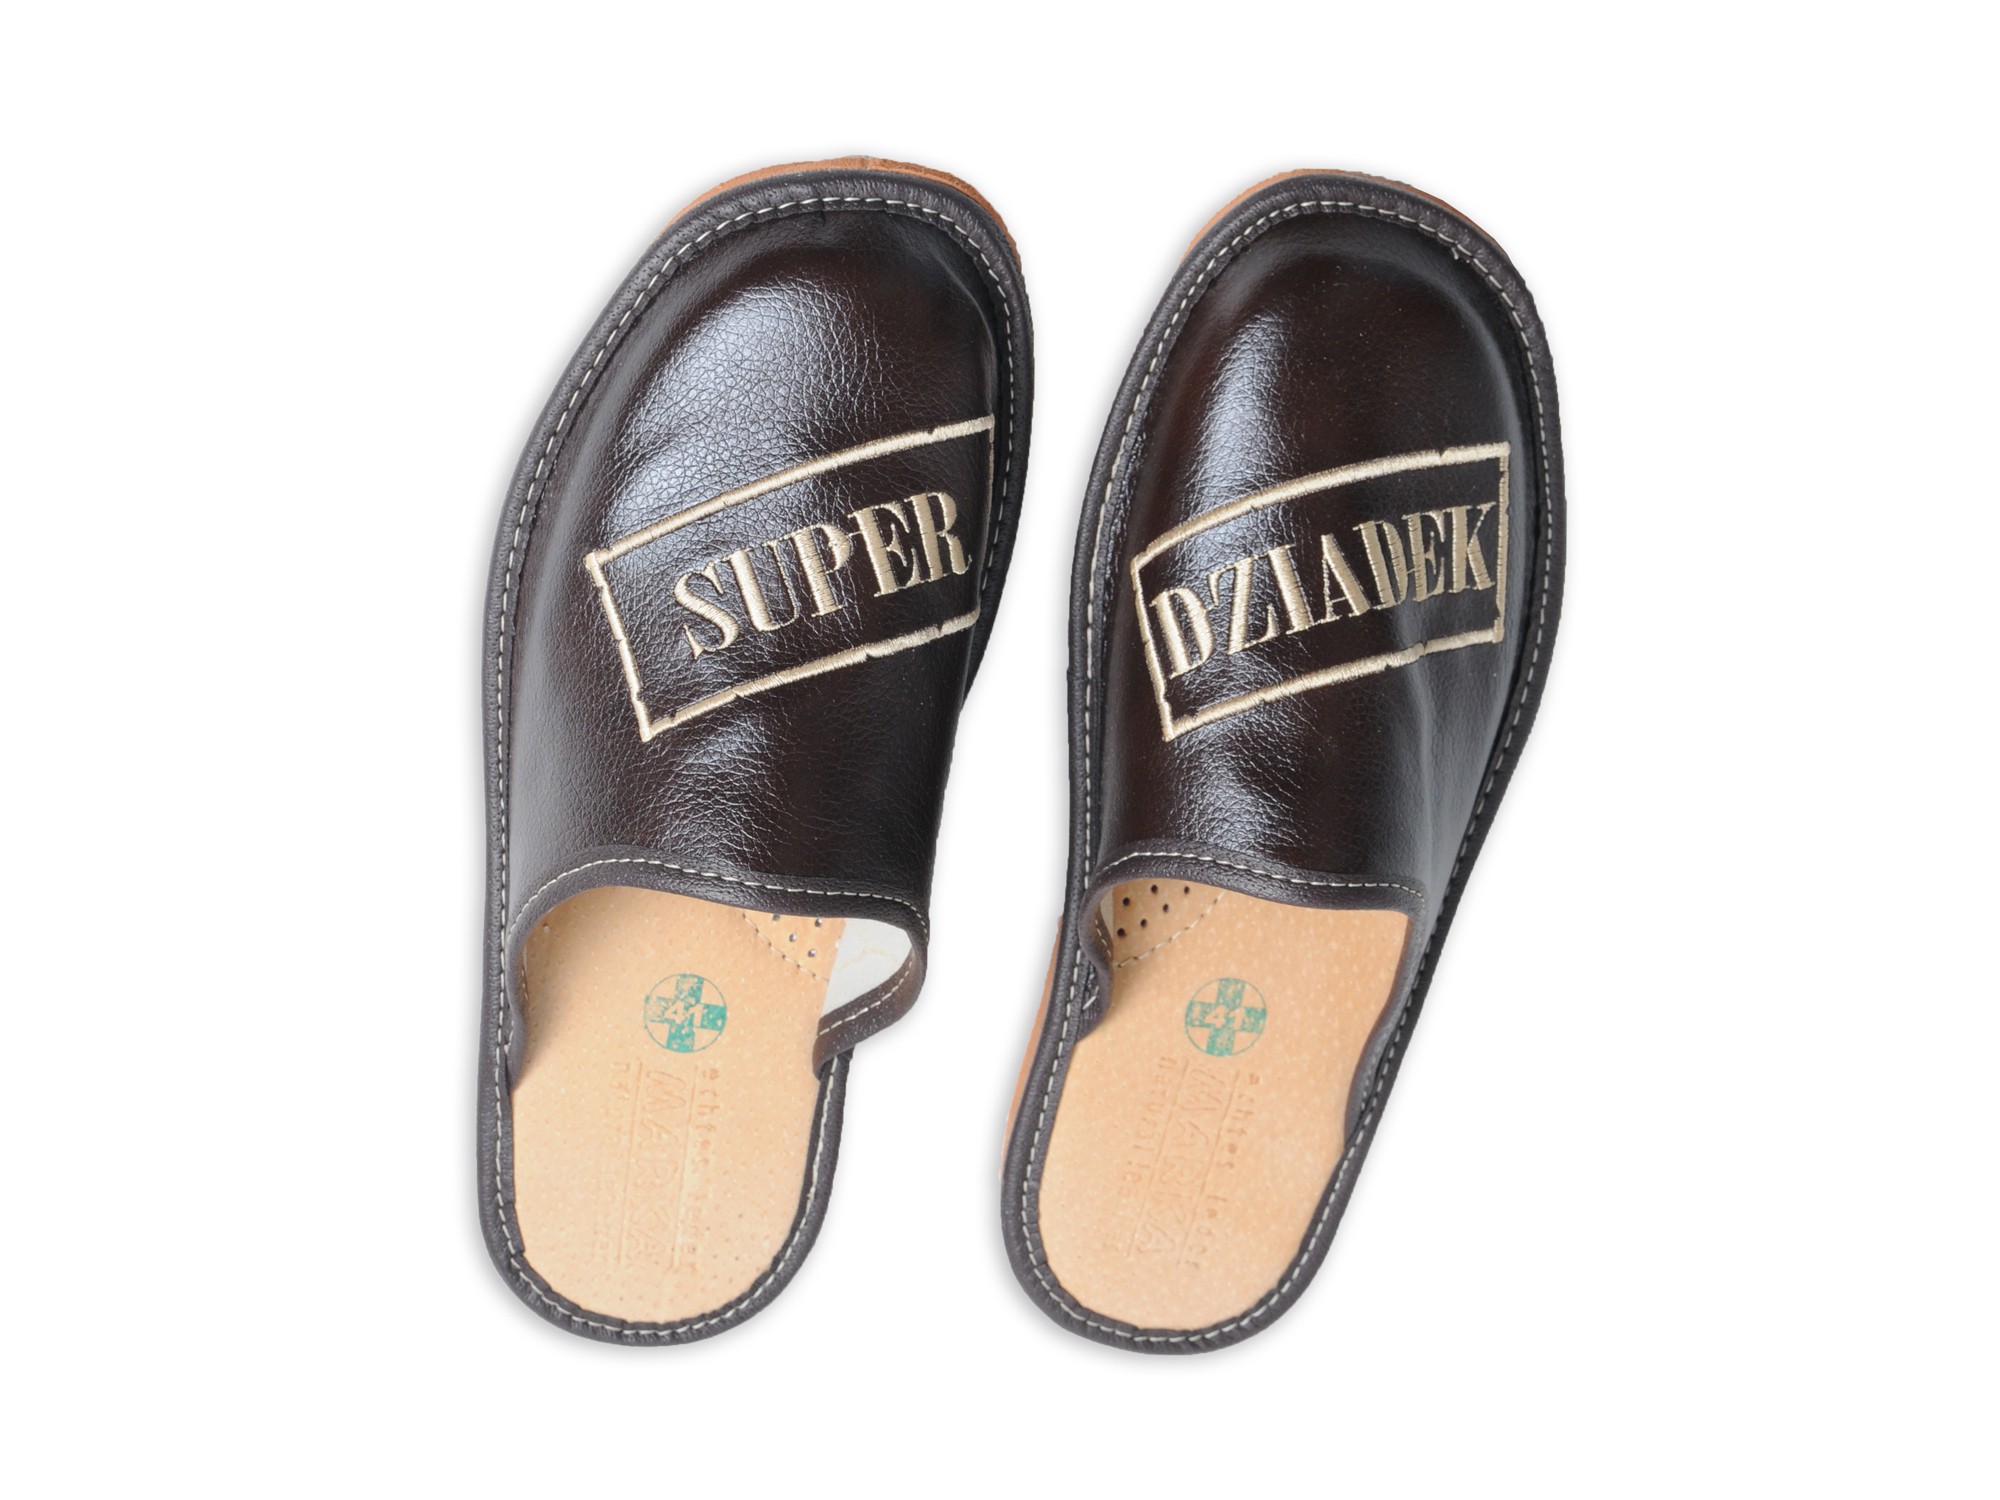 Super Dziadek - Skórzane pantofle haftowane - Prezent na dzień Dziadka - Certyfikat